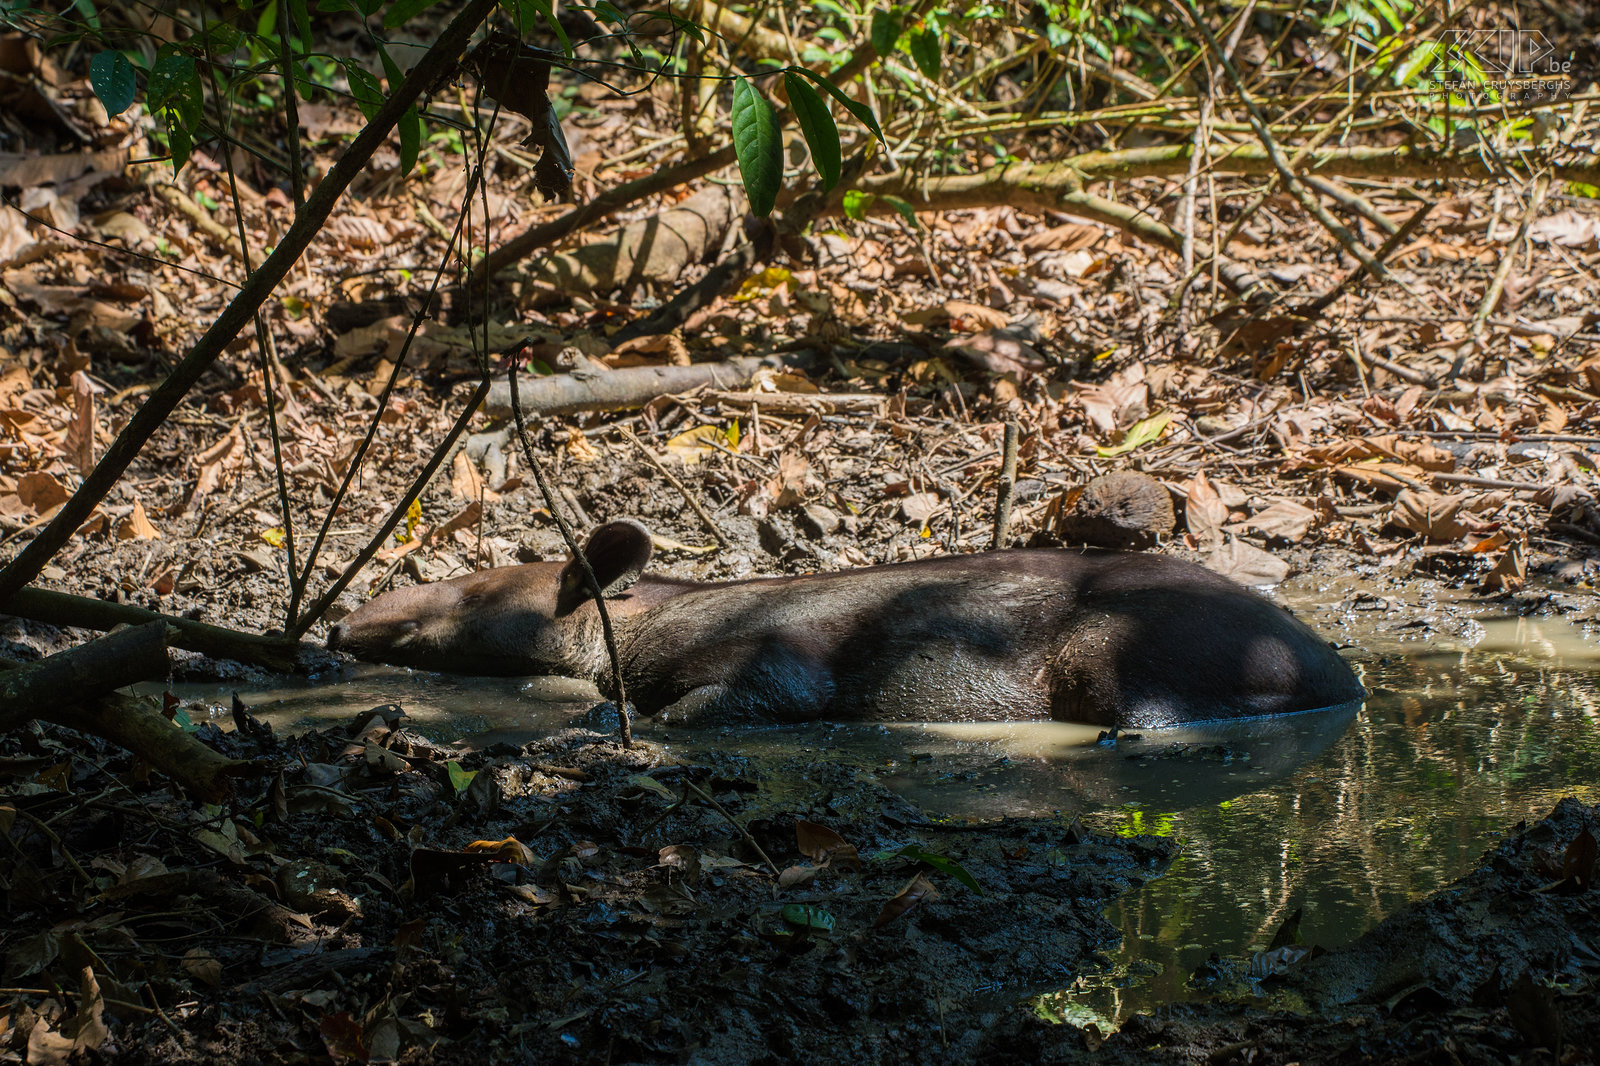 Corcovado - Bairds tapir De Midden-Amerikaanse of Bairds tapir (tapirus bairdii) is de grootste van de vier Latijns-Amerikaanse soorten van tapirs en het is het grootste inheemse landzoogdier in Midden-en Zuid-Amerika. Bairds tapir is vernoemd naar de Amerikaanse bioloog Spencer Fullerton Baird, die naar Mexico reisde en deze dieren in 1843 'ontdekte'. De Bairds tapir is voornamelijk een nachtdier, het leidt een solitair leven en heeft bijna geen natuurlijke vijanden. Het eet vooral bladeren en afgevallen fruit en meestal blijft het dichtbij water om te kunnen zwemmen en waden. Deze tapir is met uitsterven bedreigd. We waren alvast opgewonden toen we er een vonden tijdens onze jungle wandeling in Corcovado nationaal park in het zuiden van Costa Rica.<br />
 Stefan Cruysberghs